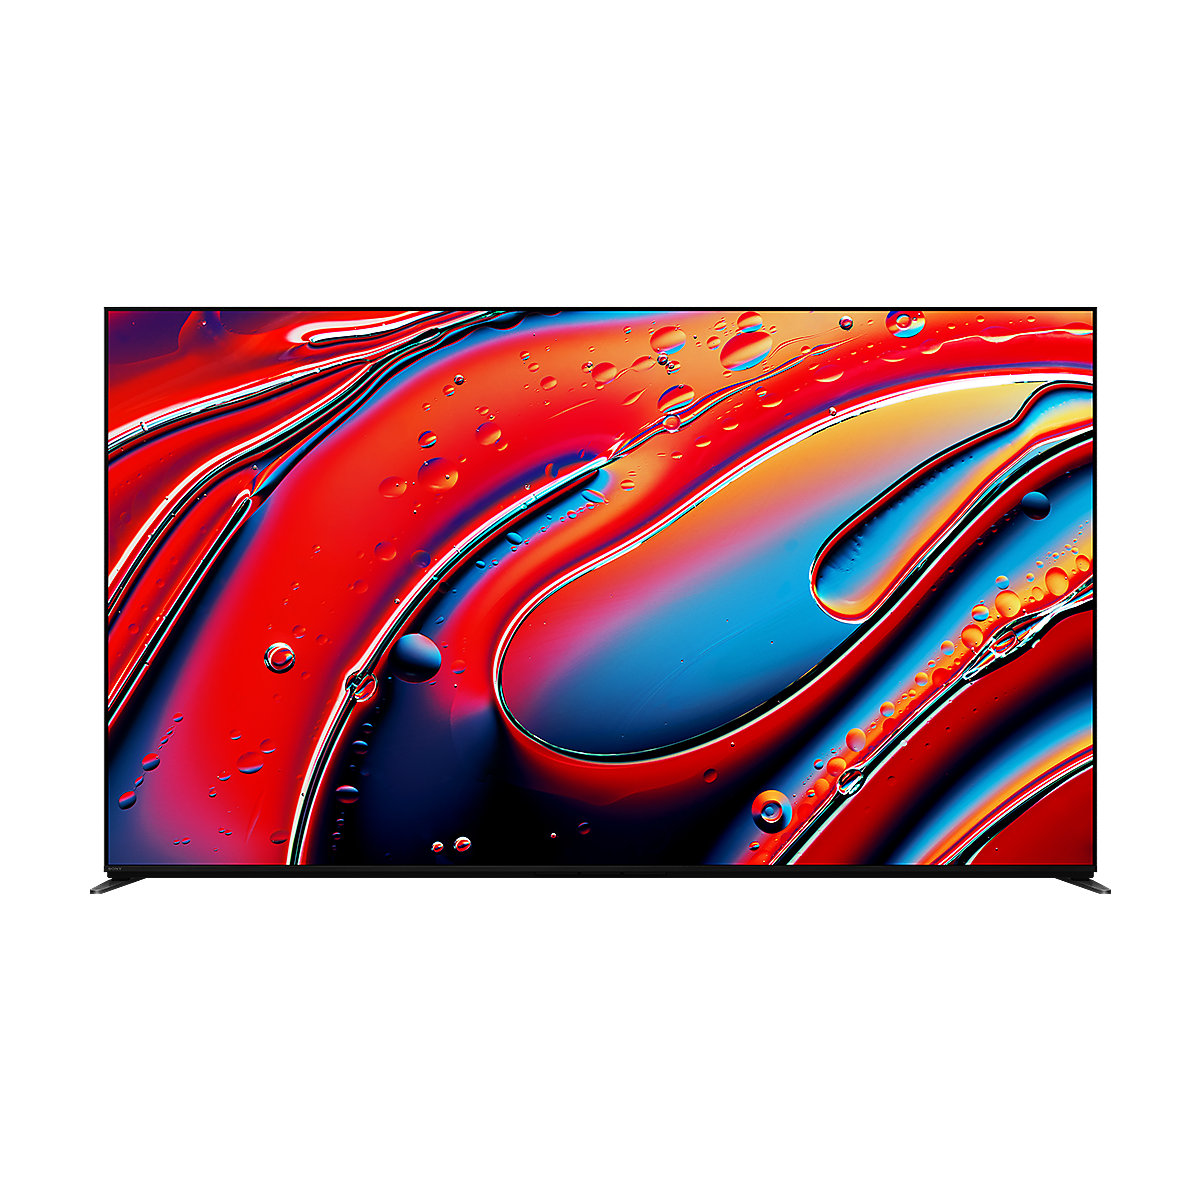 Vue de face du BRAVIA 9 avec capture d’écran de gouttelettes d’eau rouges et bleues